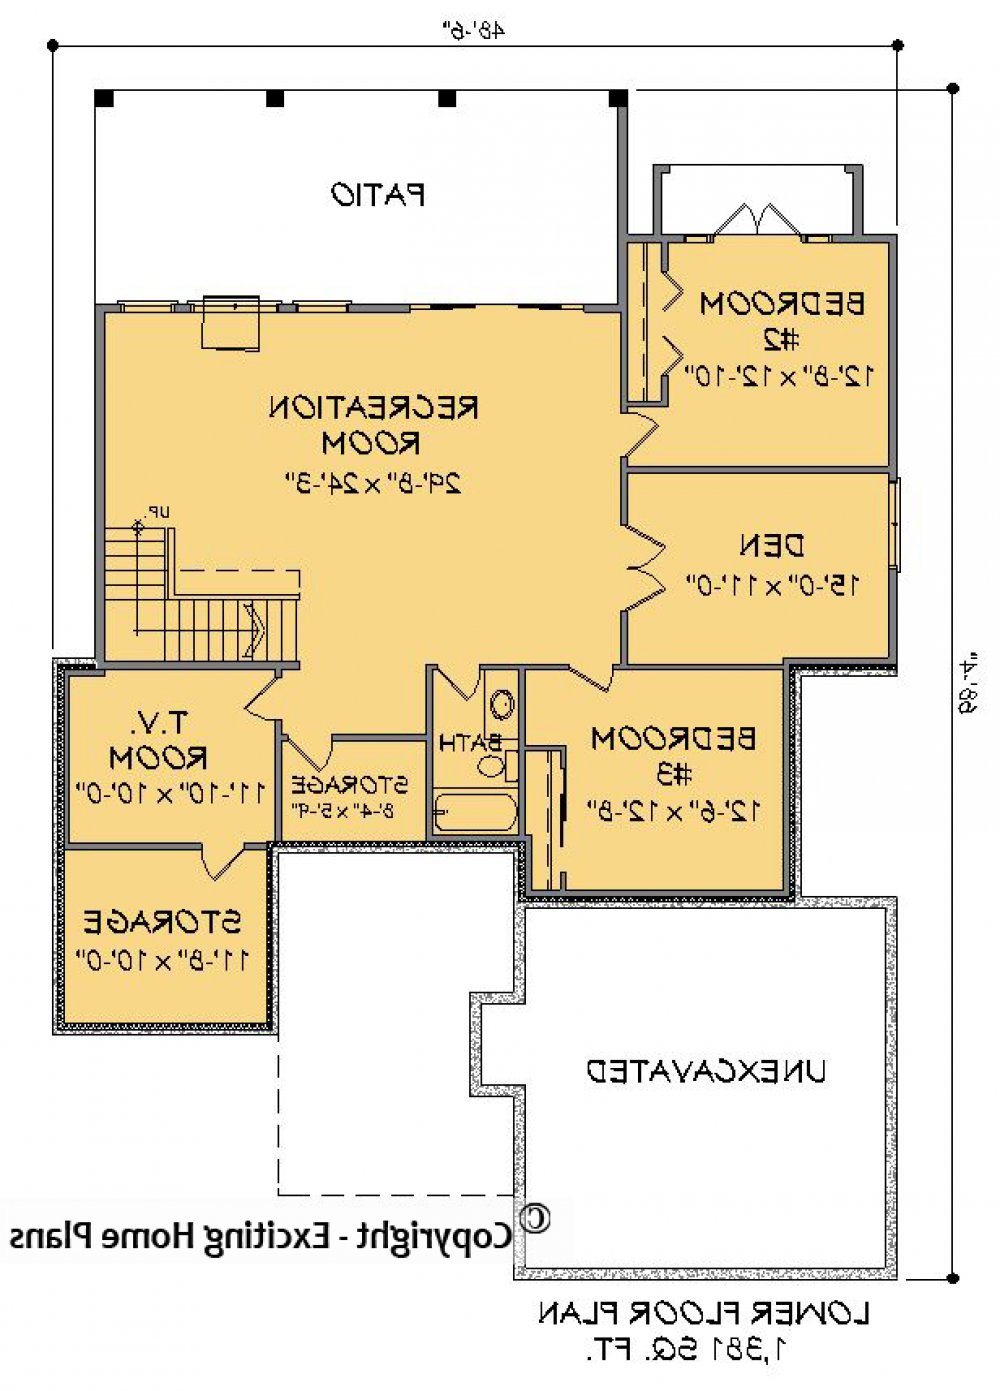 House Plan E1409-10  Lower Floor Plan REVERSE